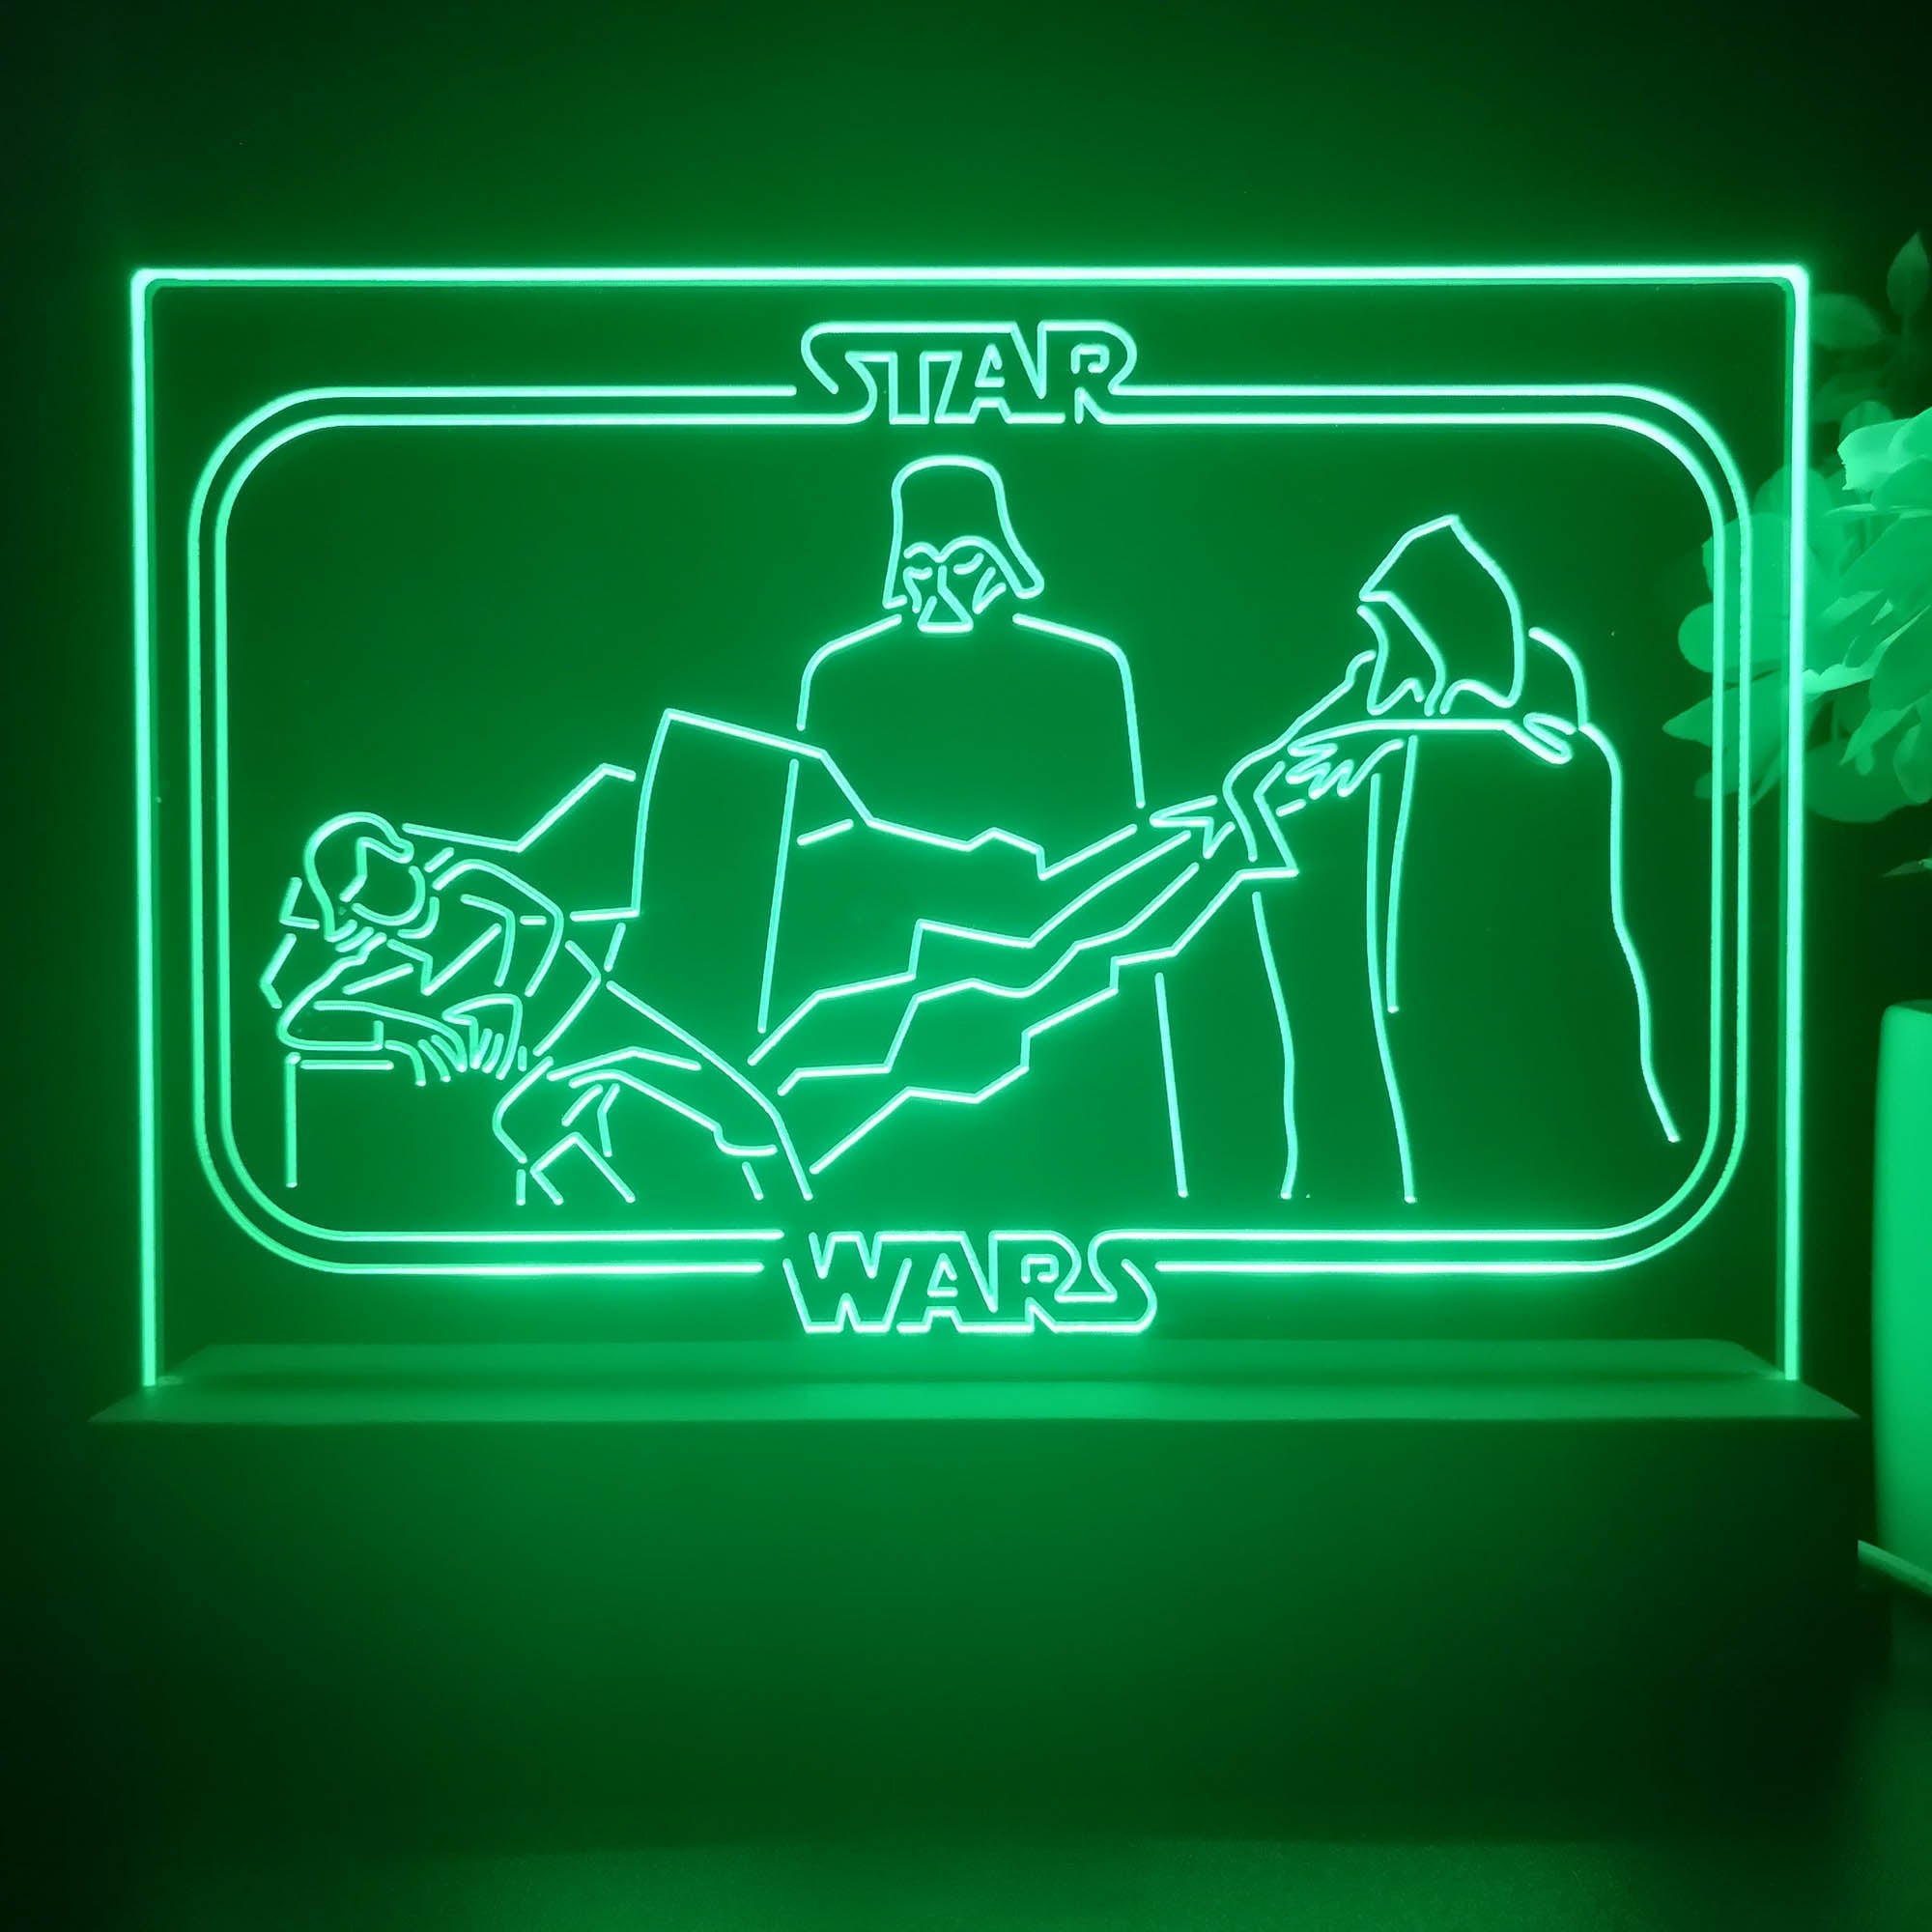 Darth Vader Stars Wars Room 3D Illusion Night Light Desk Lamp